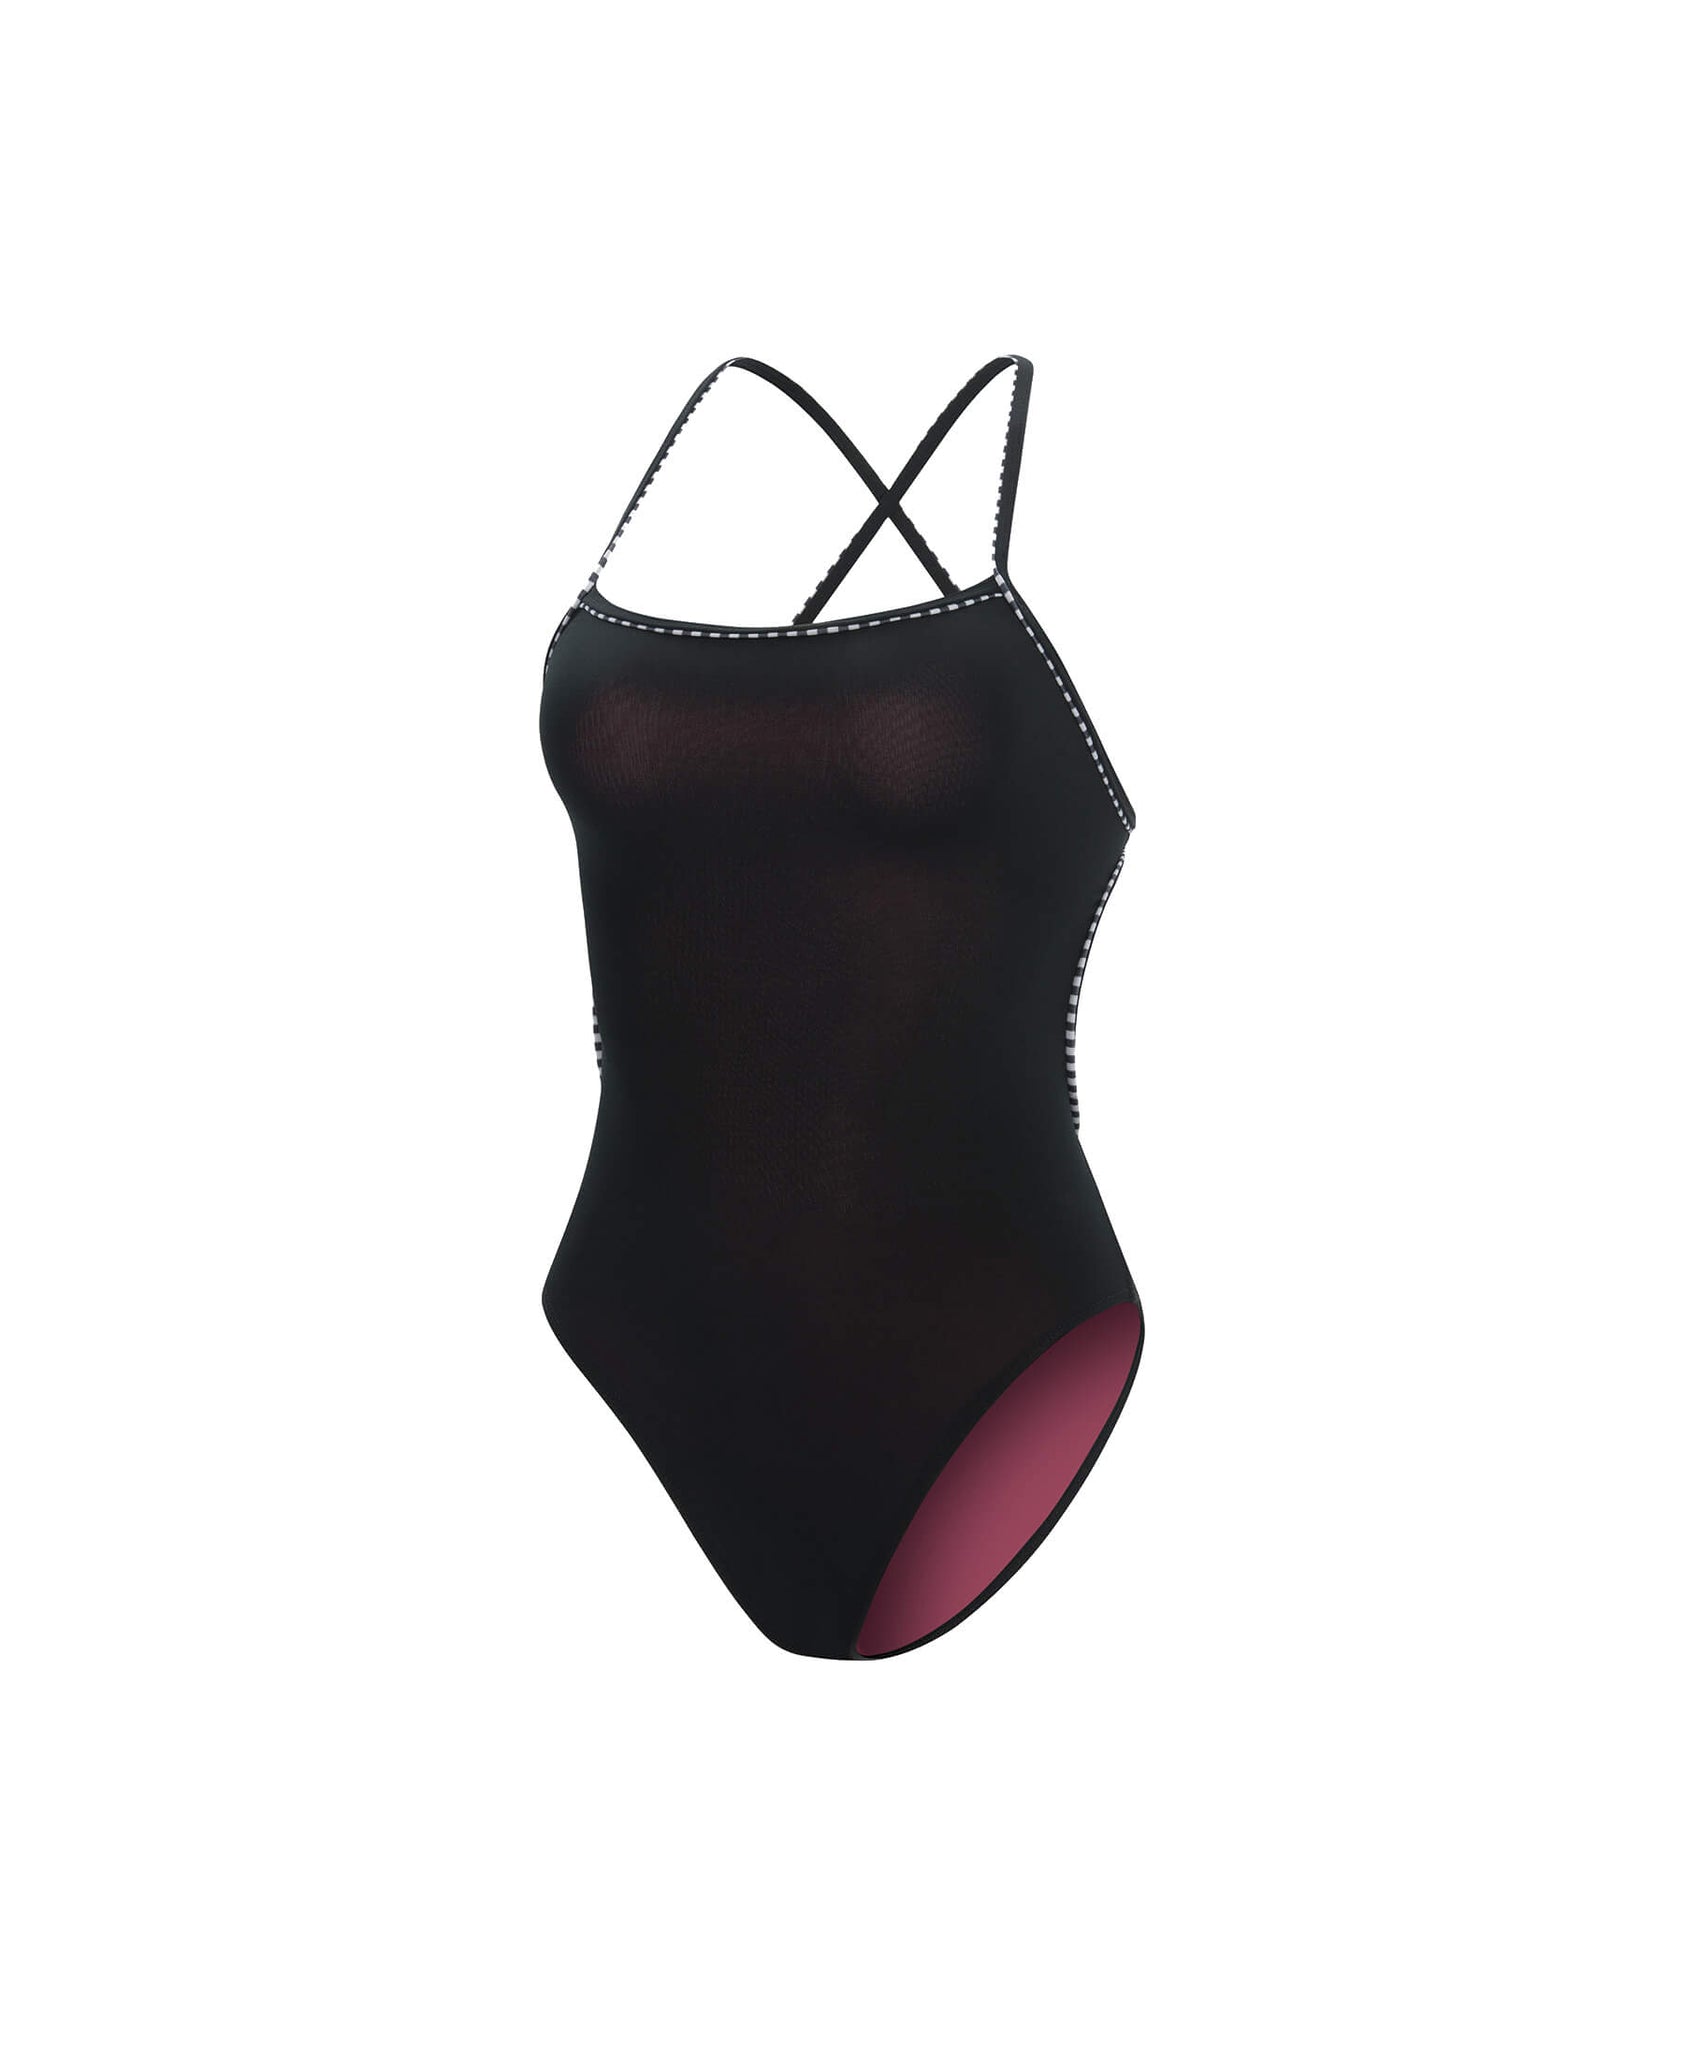 Maillot de bain une pièce femme - Tie Back Uglies Revibe||Women's Swimsuit - Tie Back Uglies Revibe